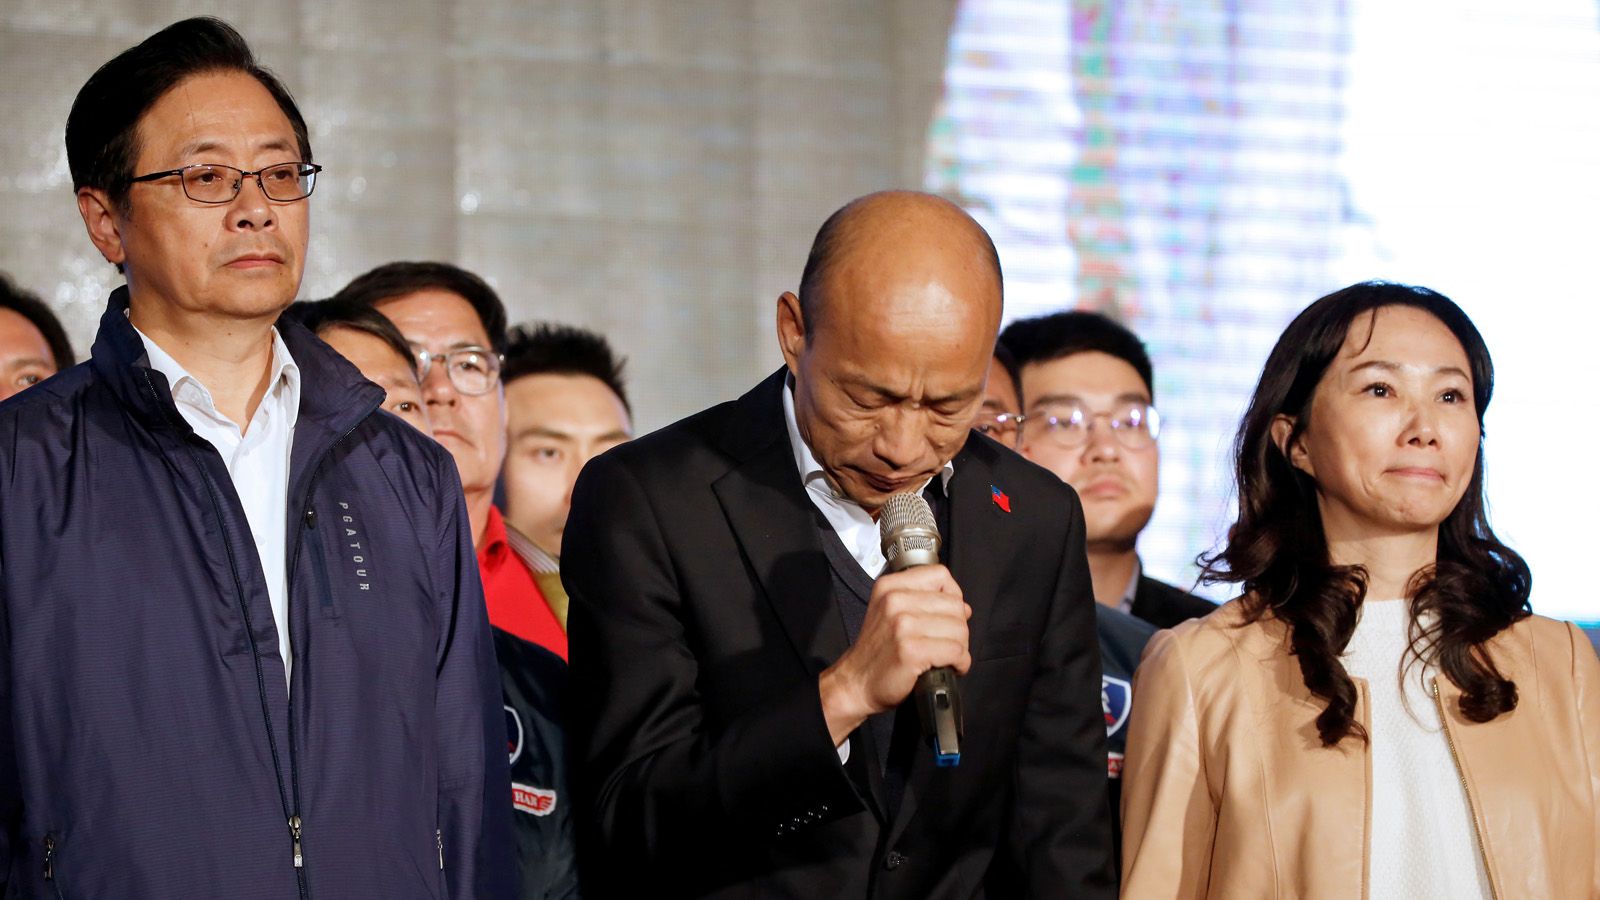 高雄市長解職であらわになった台湾社会の分断 リコール支持者にみる政治的対立の現実 | 中国･台湾 | 東洋経済オンライン